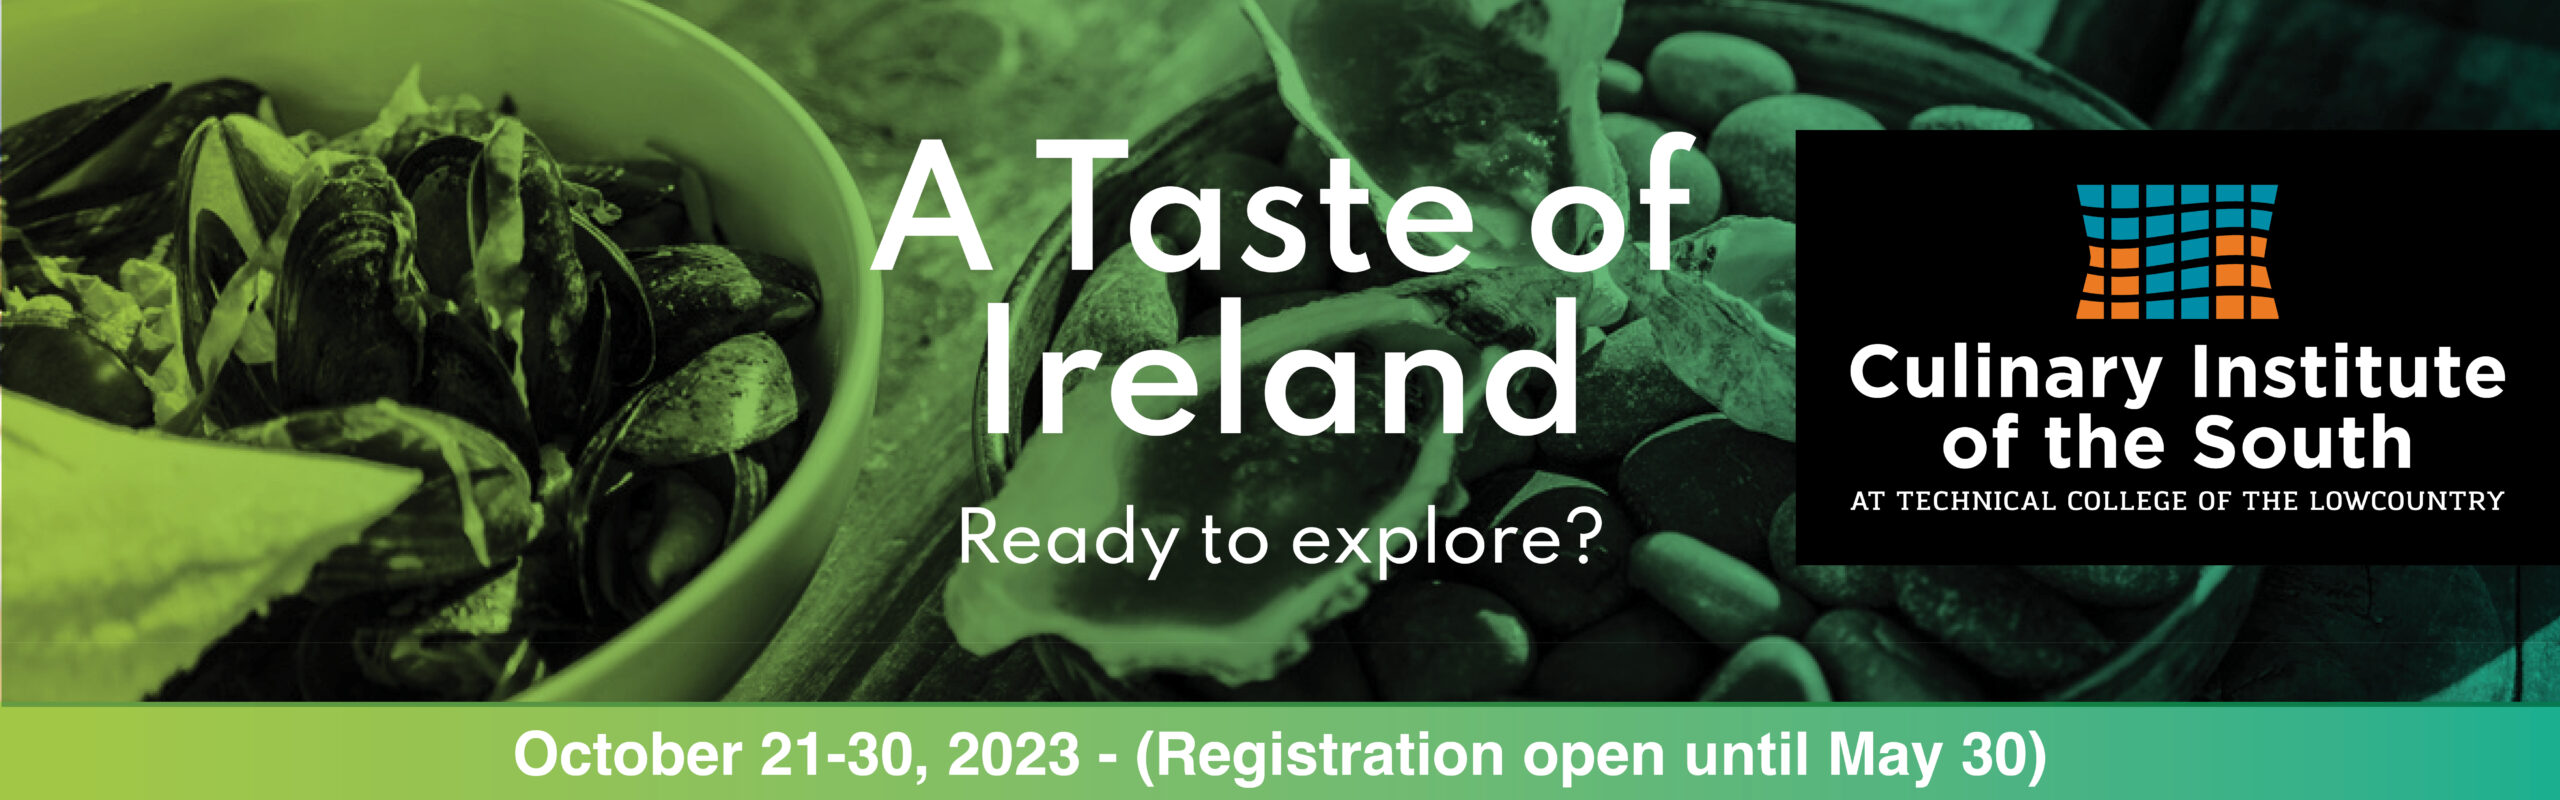 A Taste of Ireland REV 04-18-23